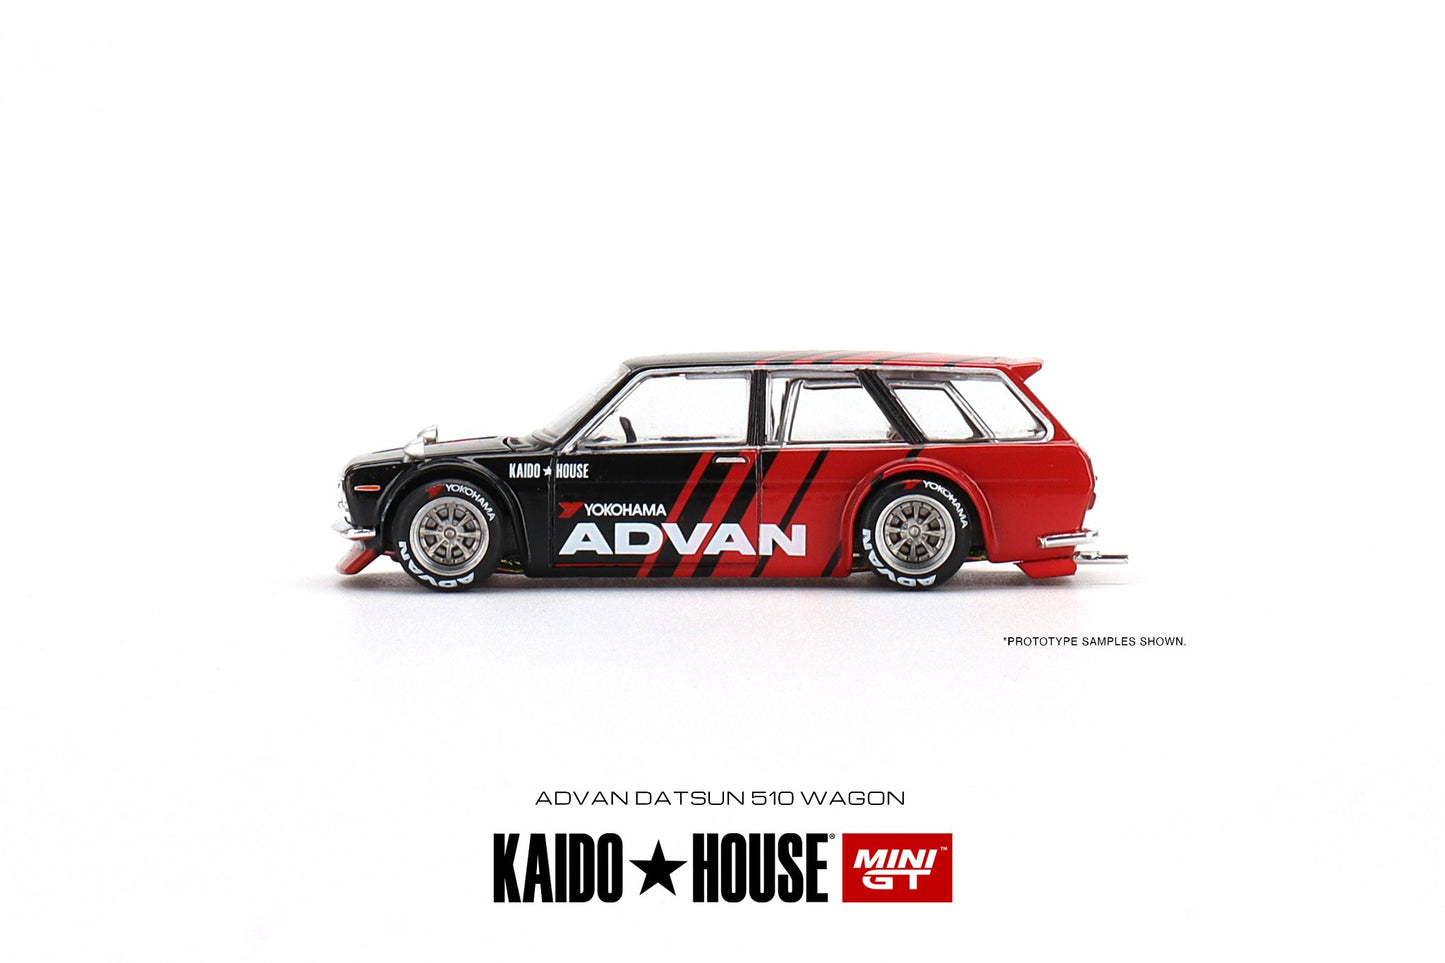 Mini GT x Kaido House Datsun 510 Wagon Advan KHMG033